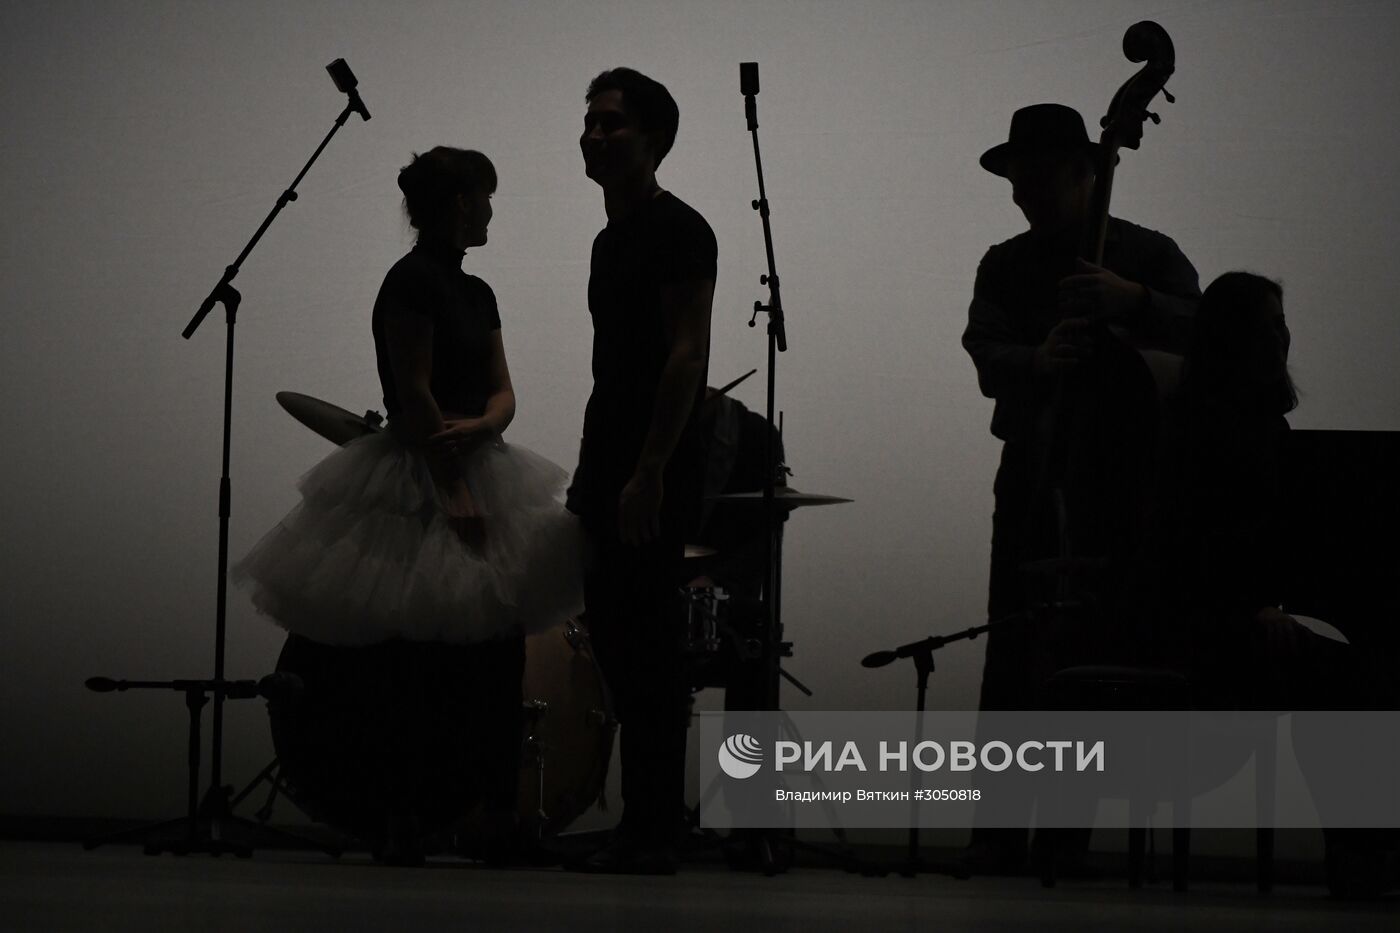 Репетиция Государственного академического ансамбля народного танца имени Игоря Моисеева